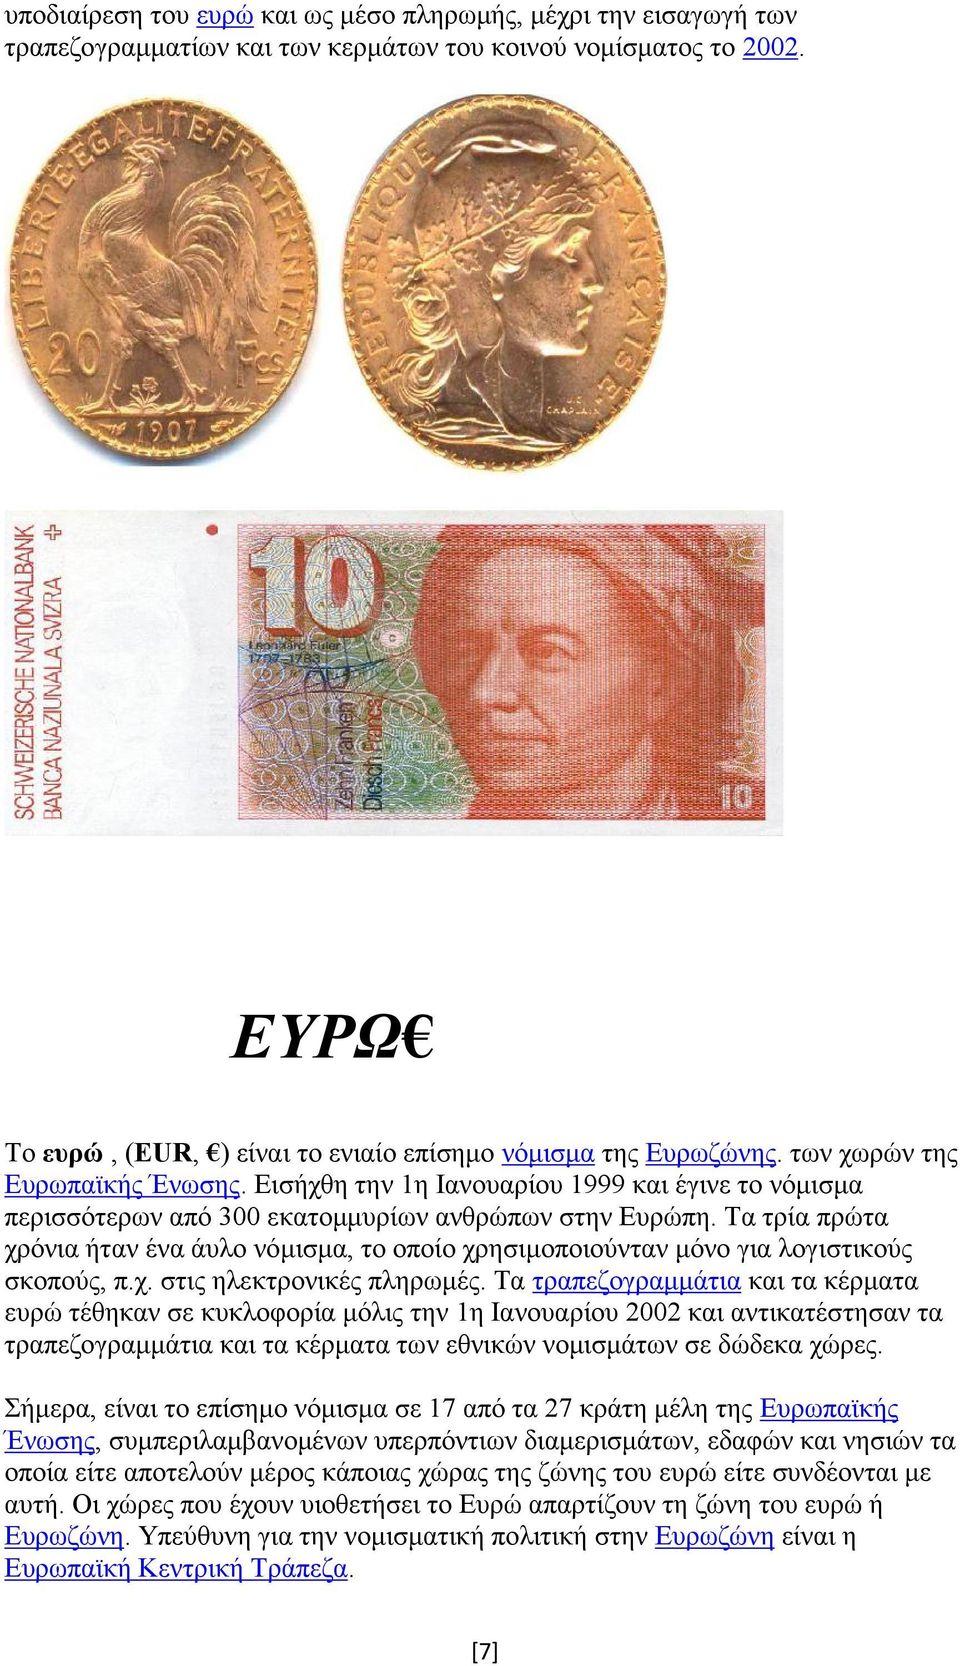 Τα τρία πρώτα χρόνια ήταν ένα άυλο νόμισμα, το οποίο χρησιμοποιούνταν μόνο για λογιστικούς σκοπούς, π.χ. στις ηλεκτρονικές πληρωμές.